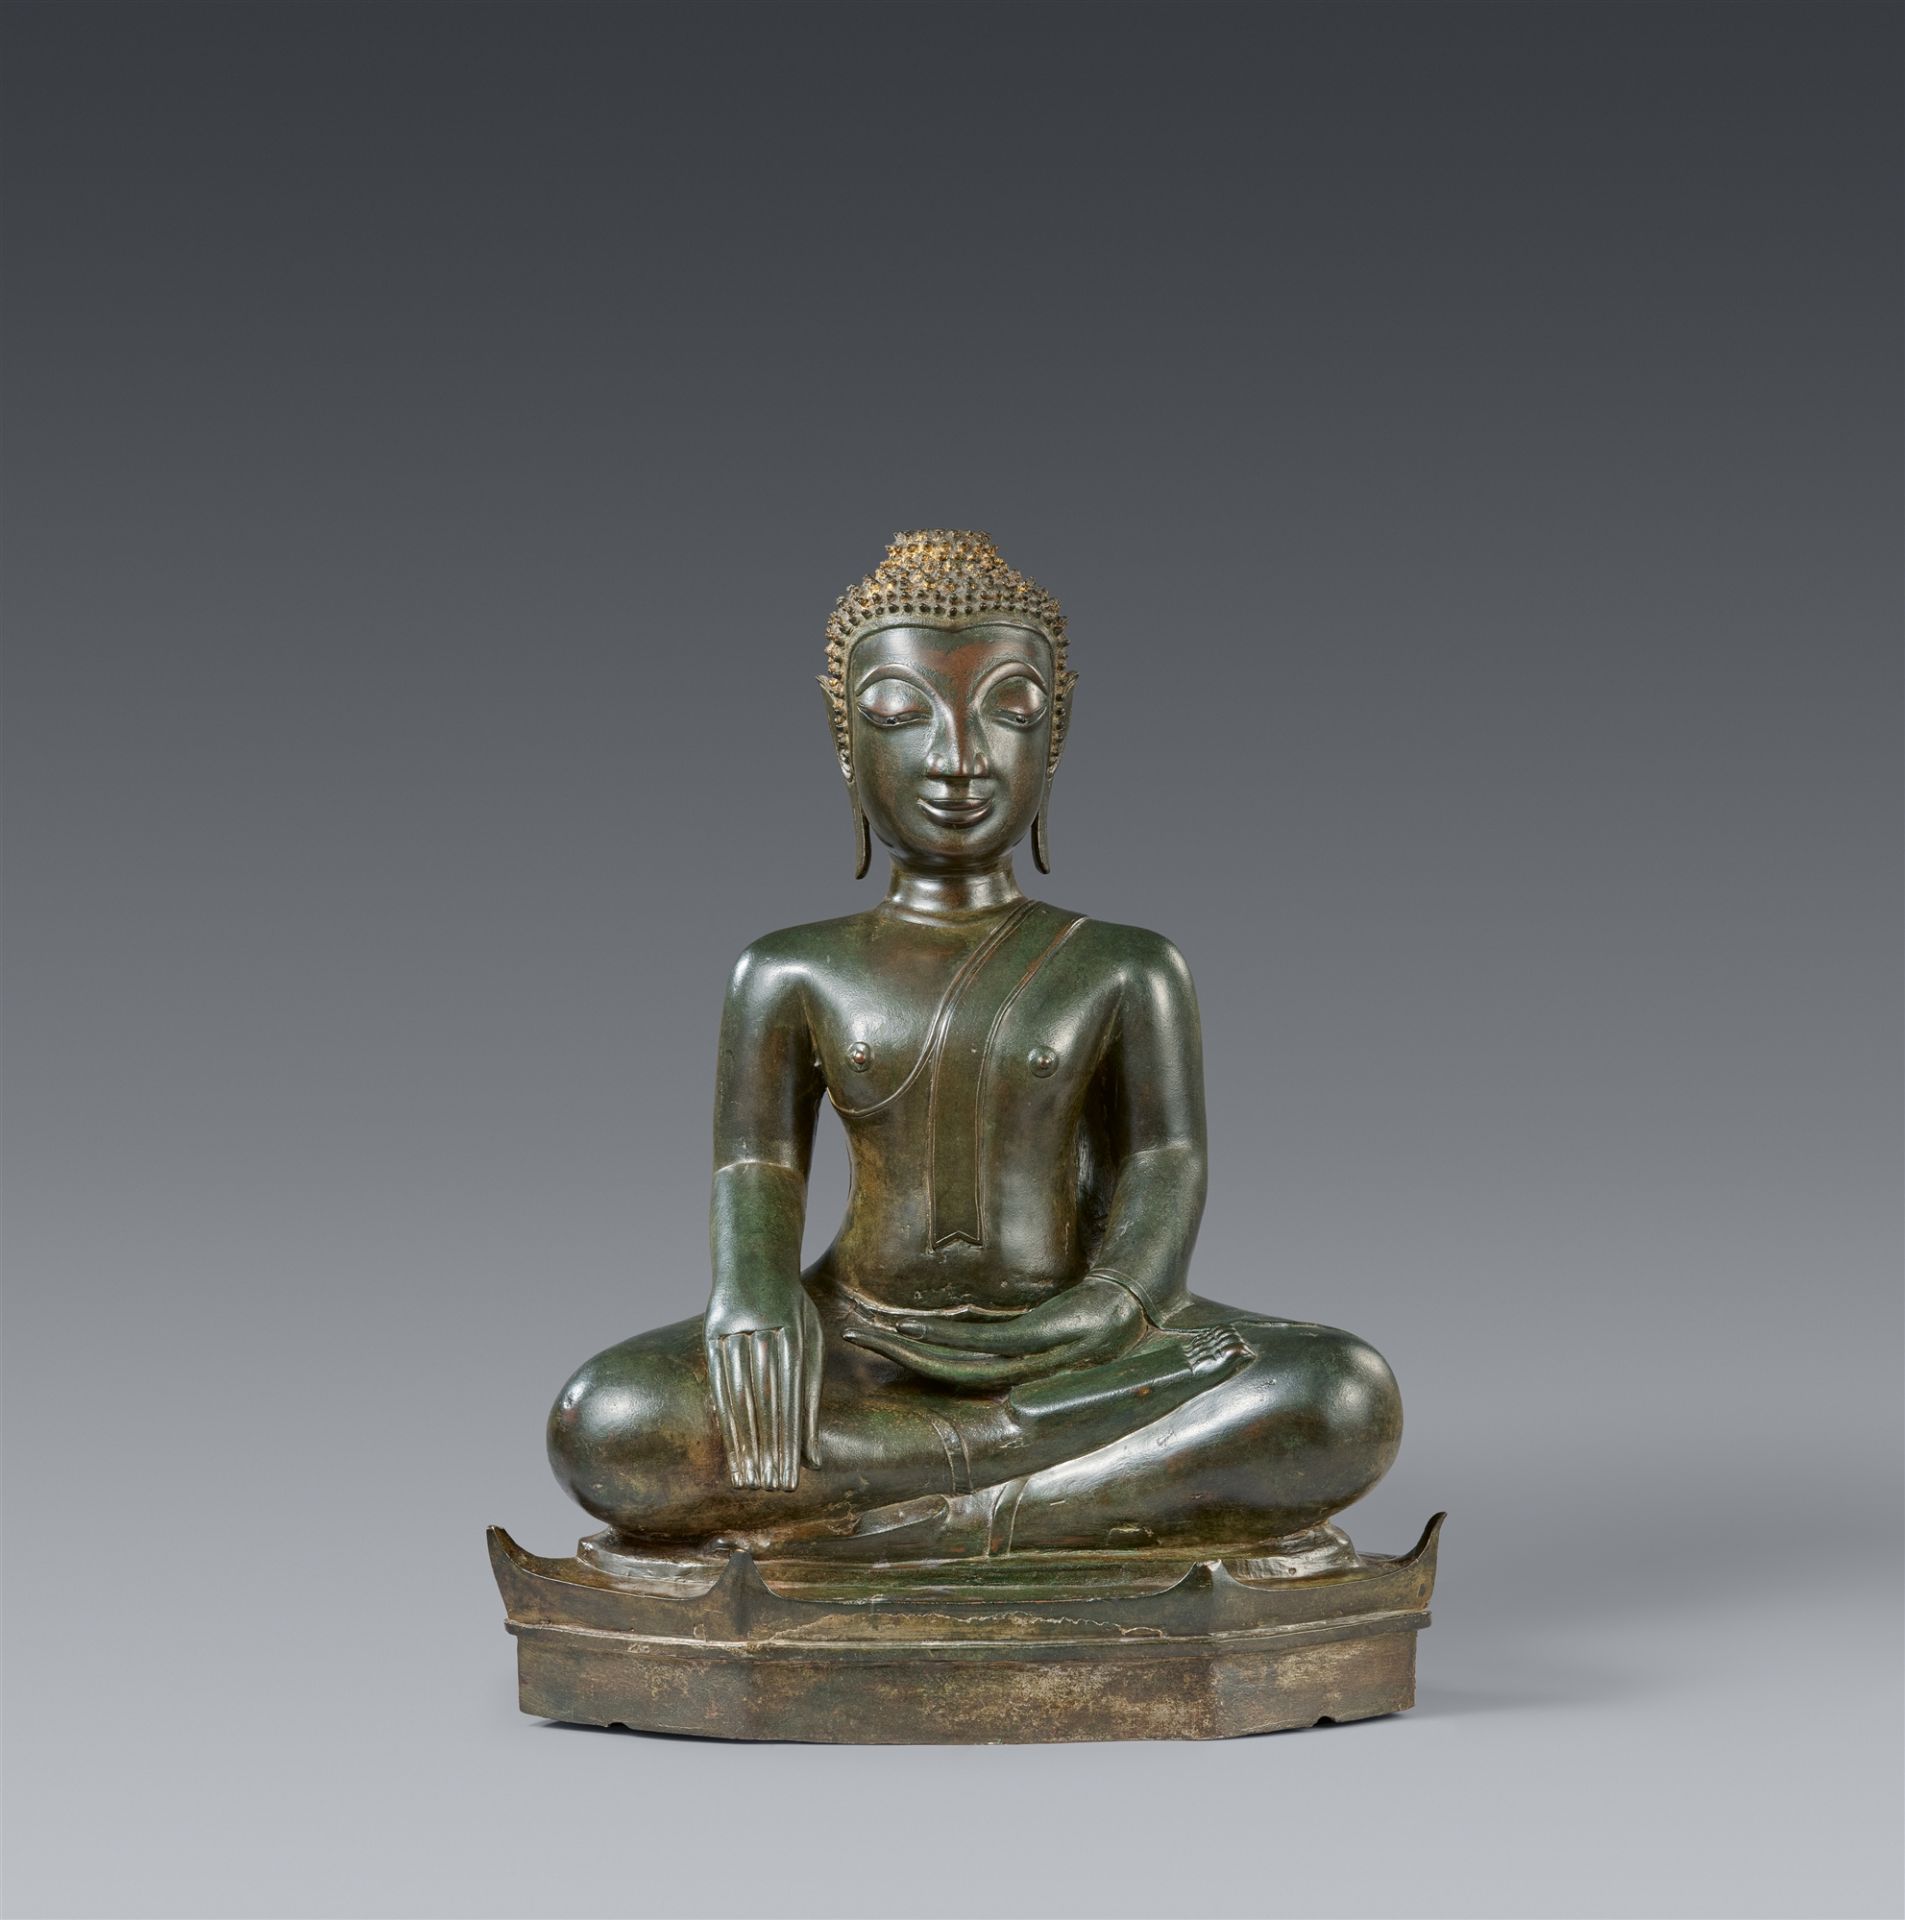 A Laotian bronze figure of Buddha Shakyamuni. 17th century or later